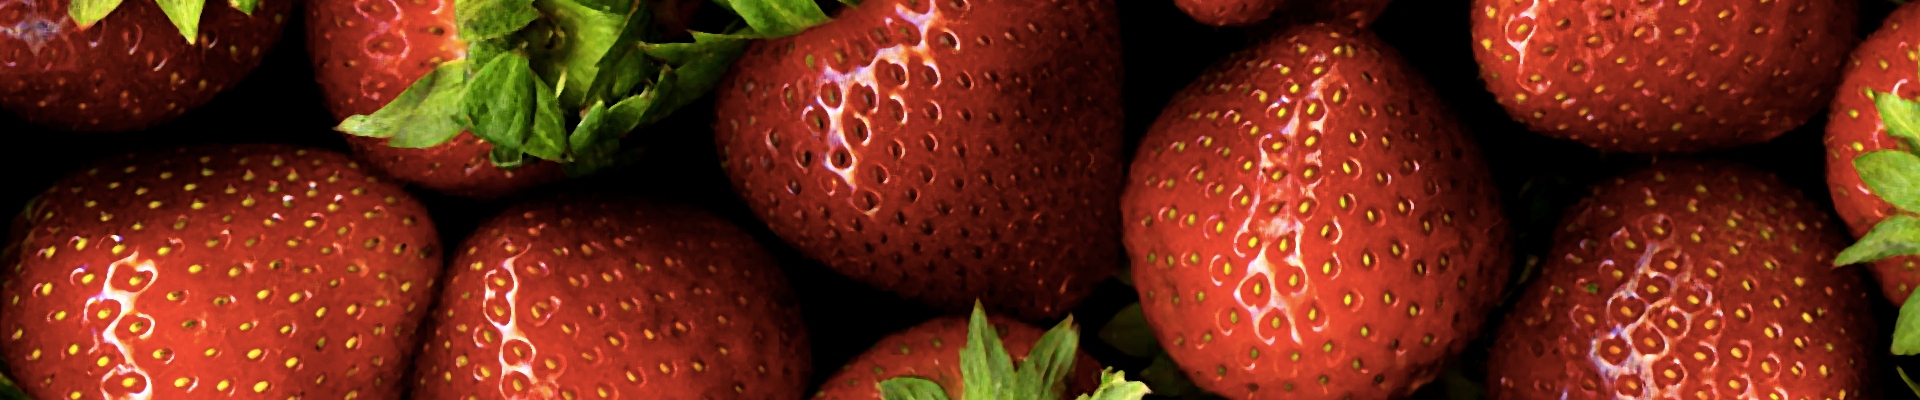 Productores y distribuidores de fresas